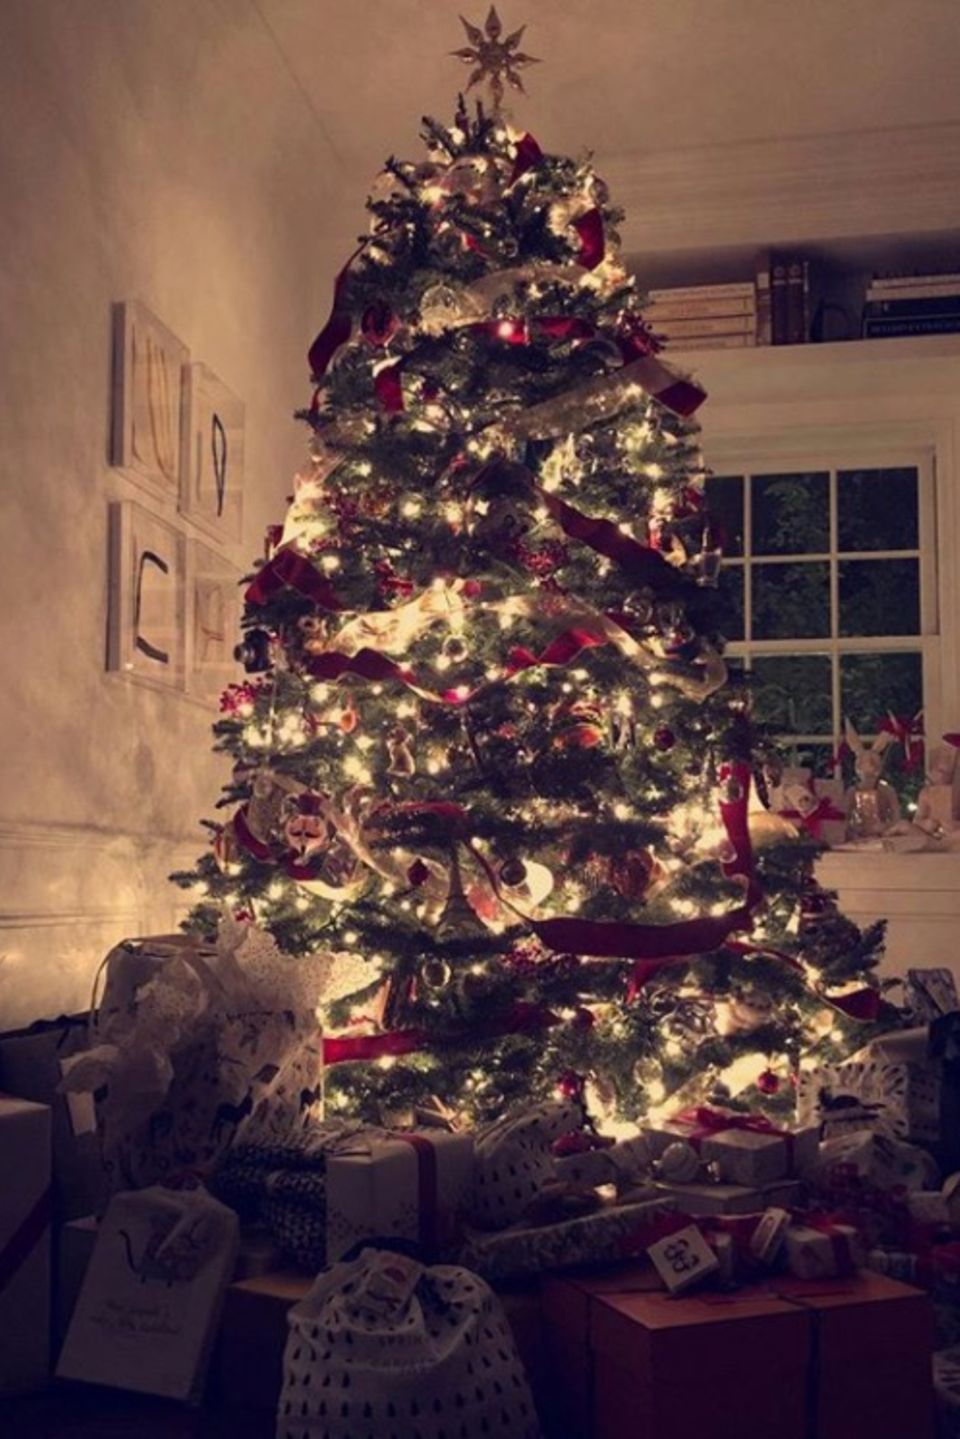 Supermodel Miranda Kerr ist total aus dem Häuschen: Ihr Weihnachtsbaum ist an wunderschöner Festlichkeit nicht zu überbieten.